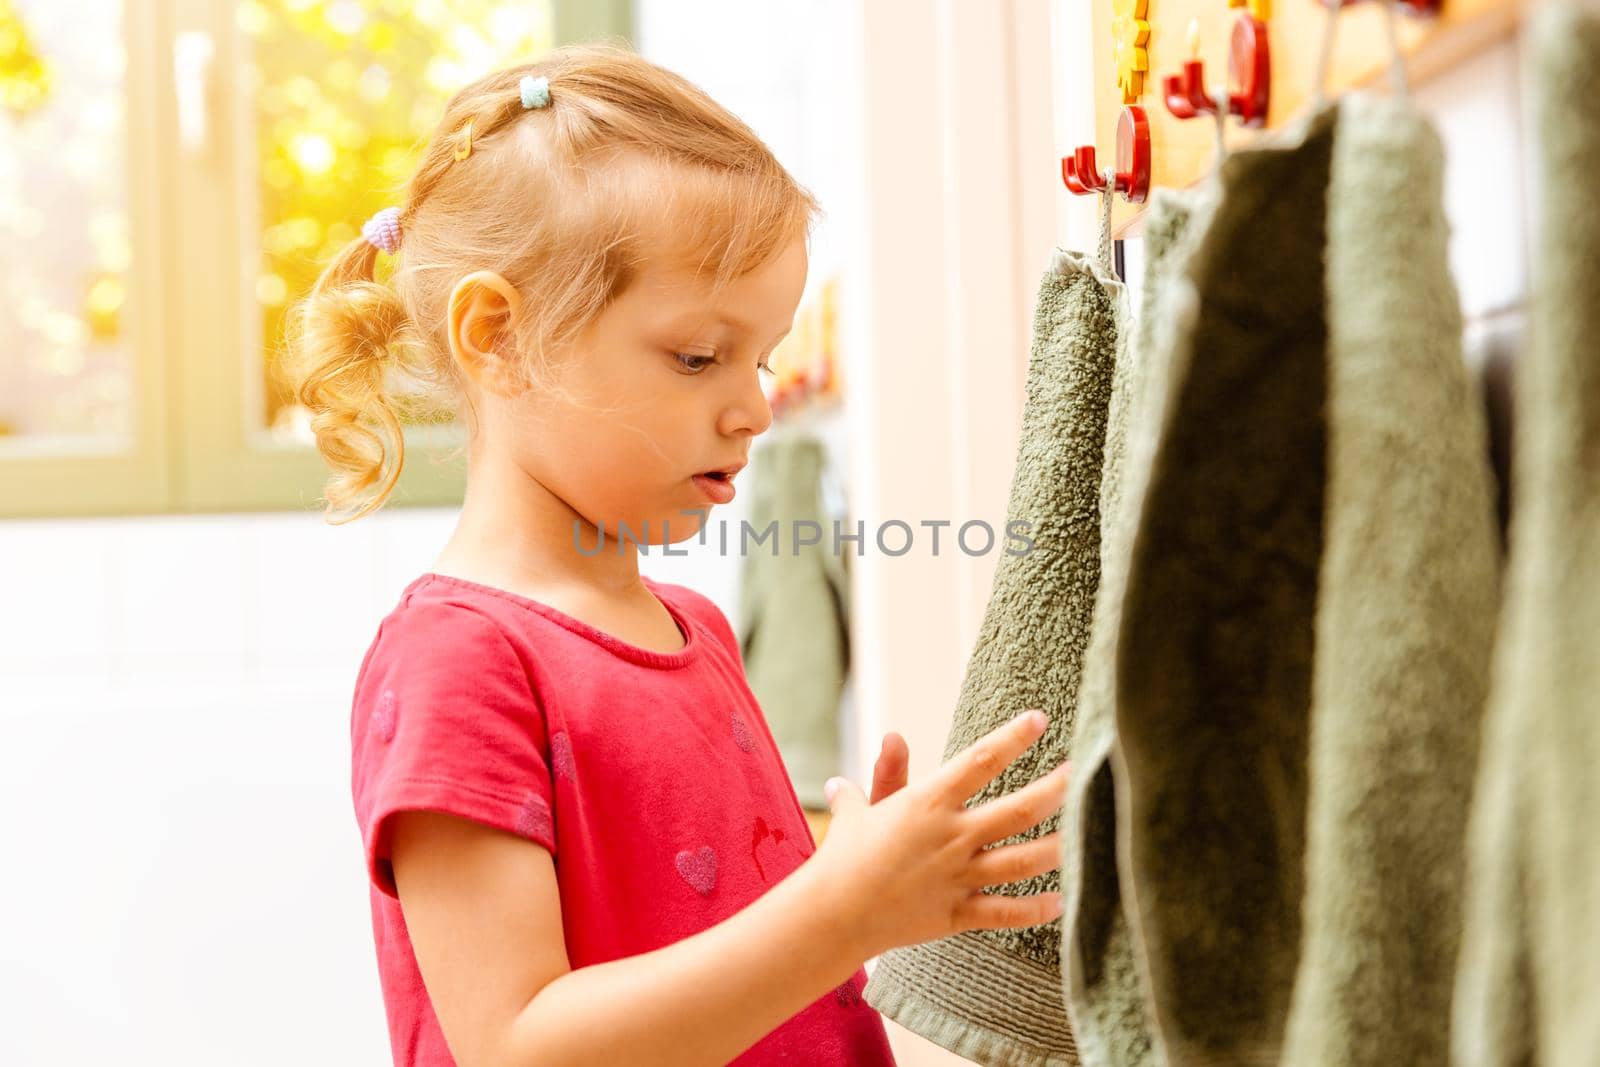 Little girl in nursery school using towel in bathroom drying her hands